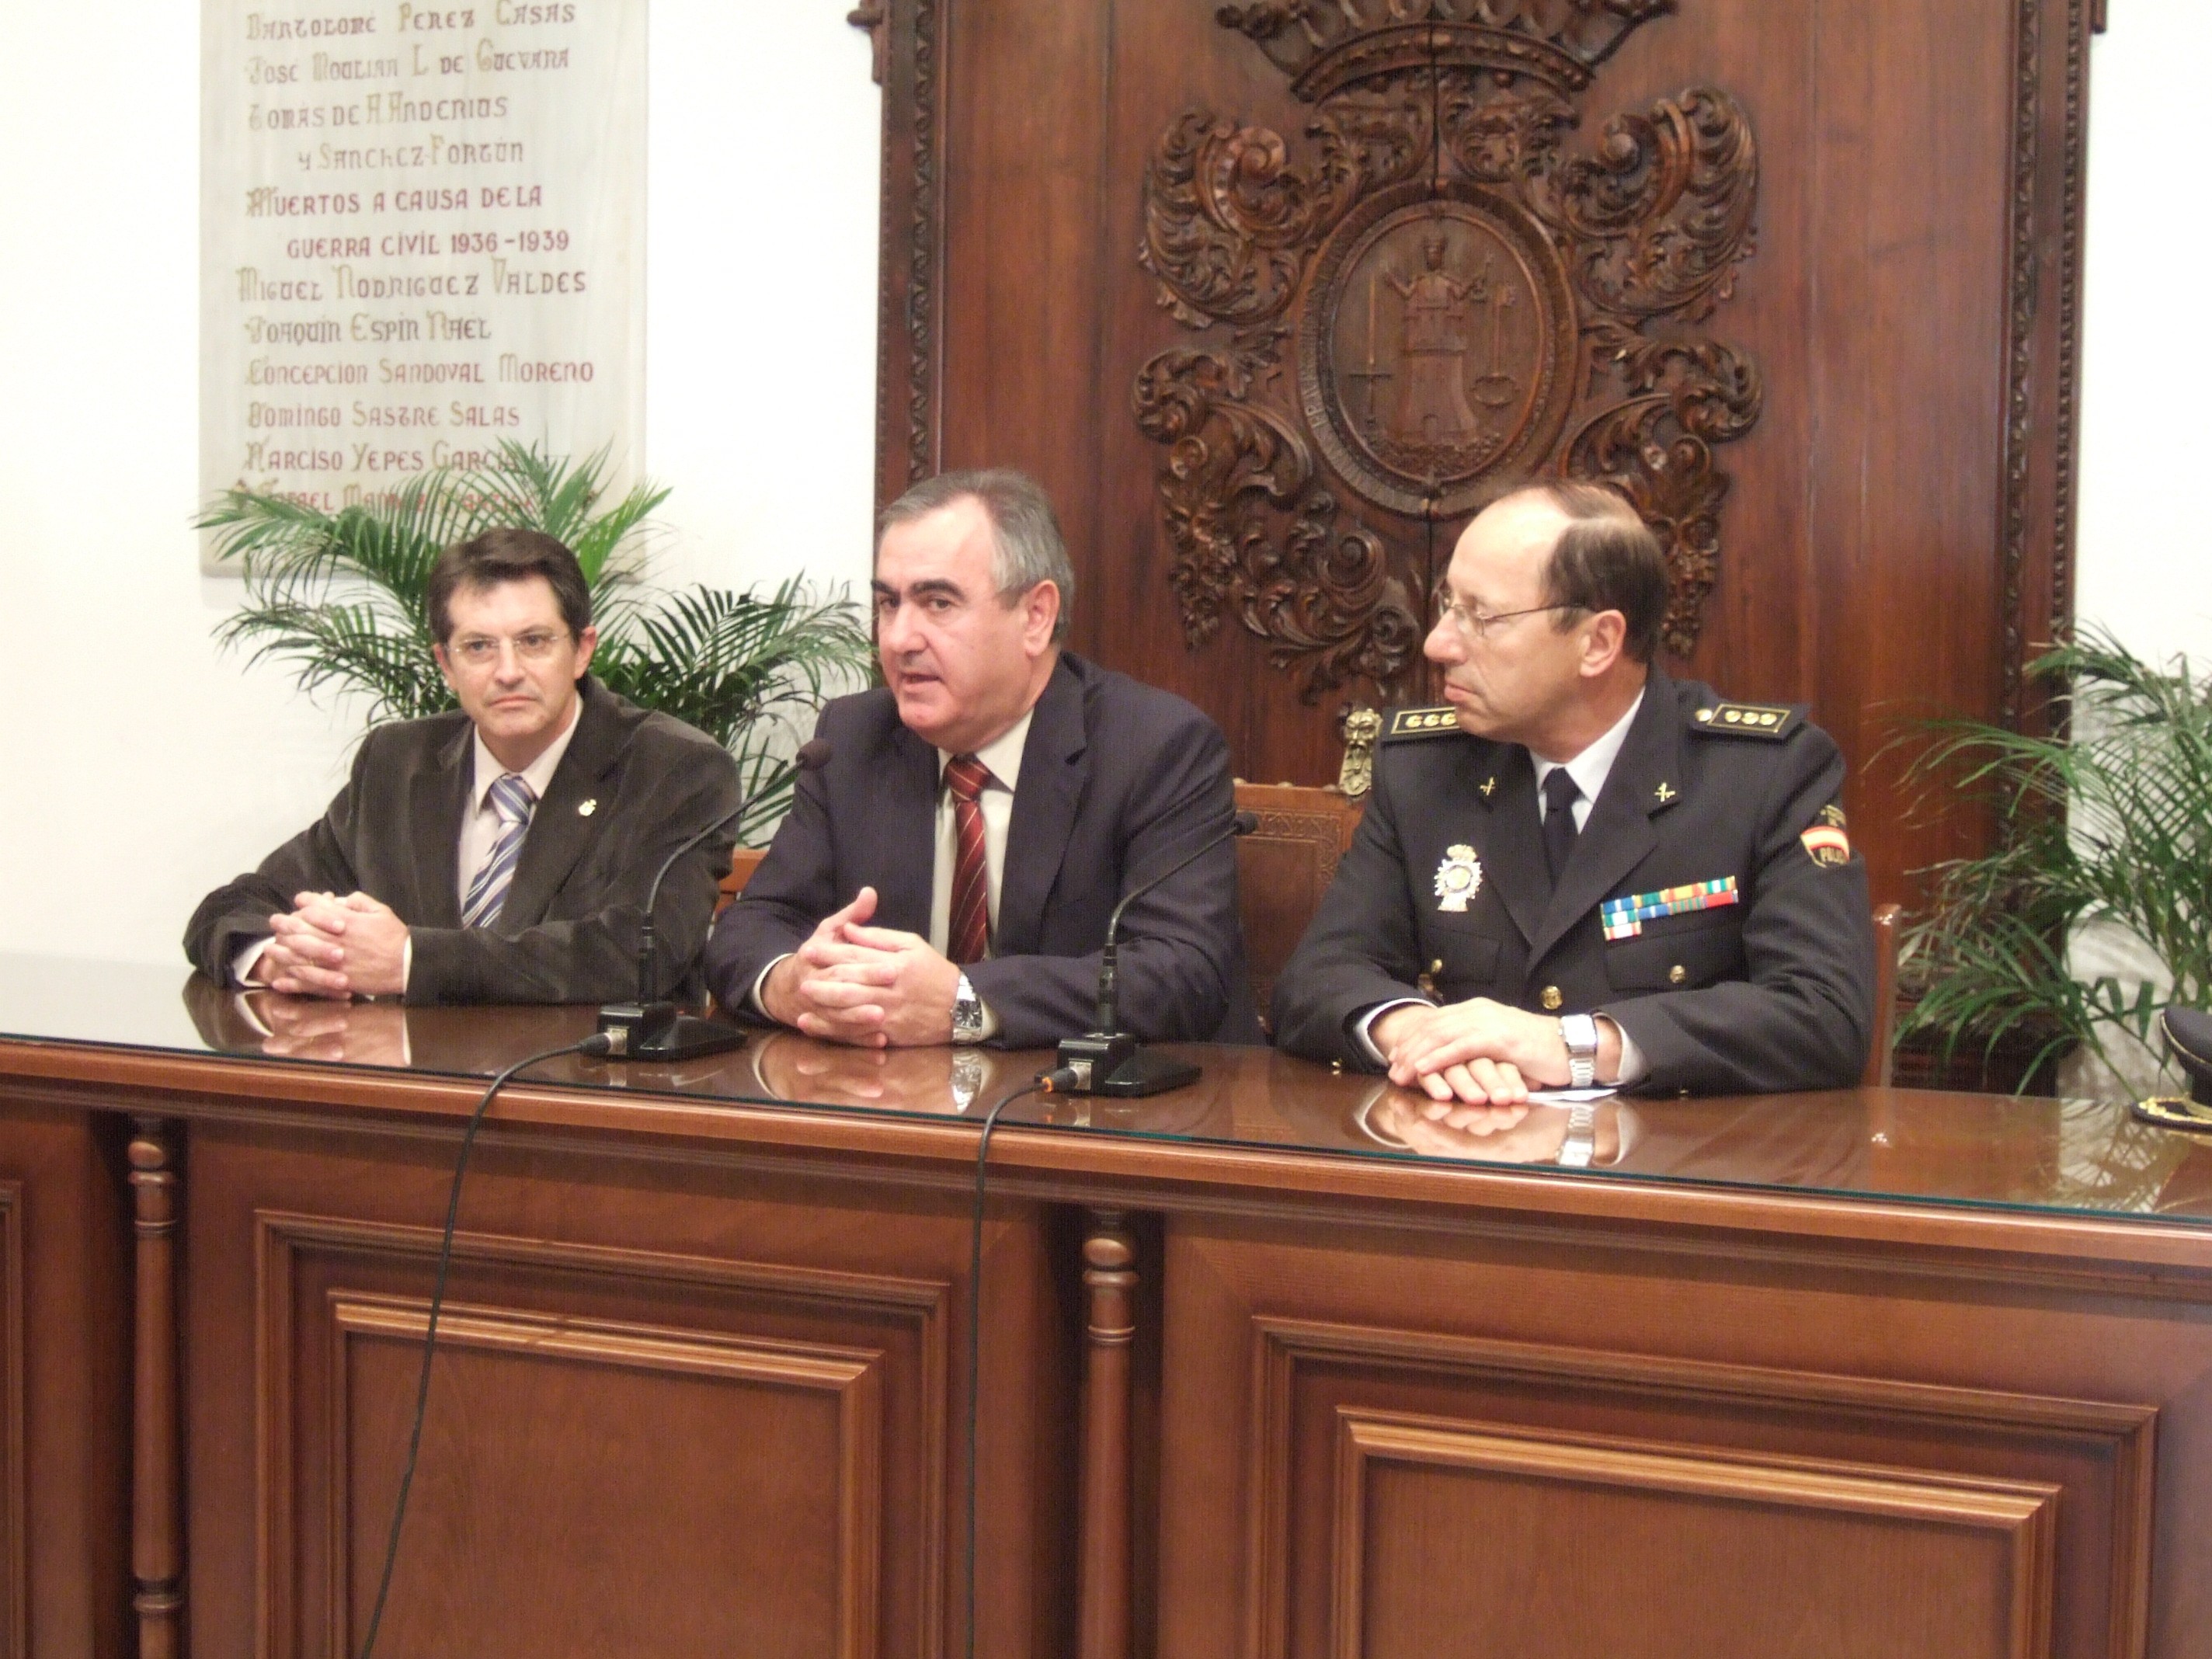 De izq. a der. El alcalde de Lorca, Francisco Jódar, el Delegado del Gobierno, Rafael González Tovar, y el Jefe Superior de la Policía, Carlos Llorente.